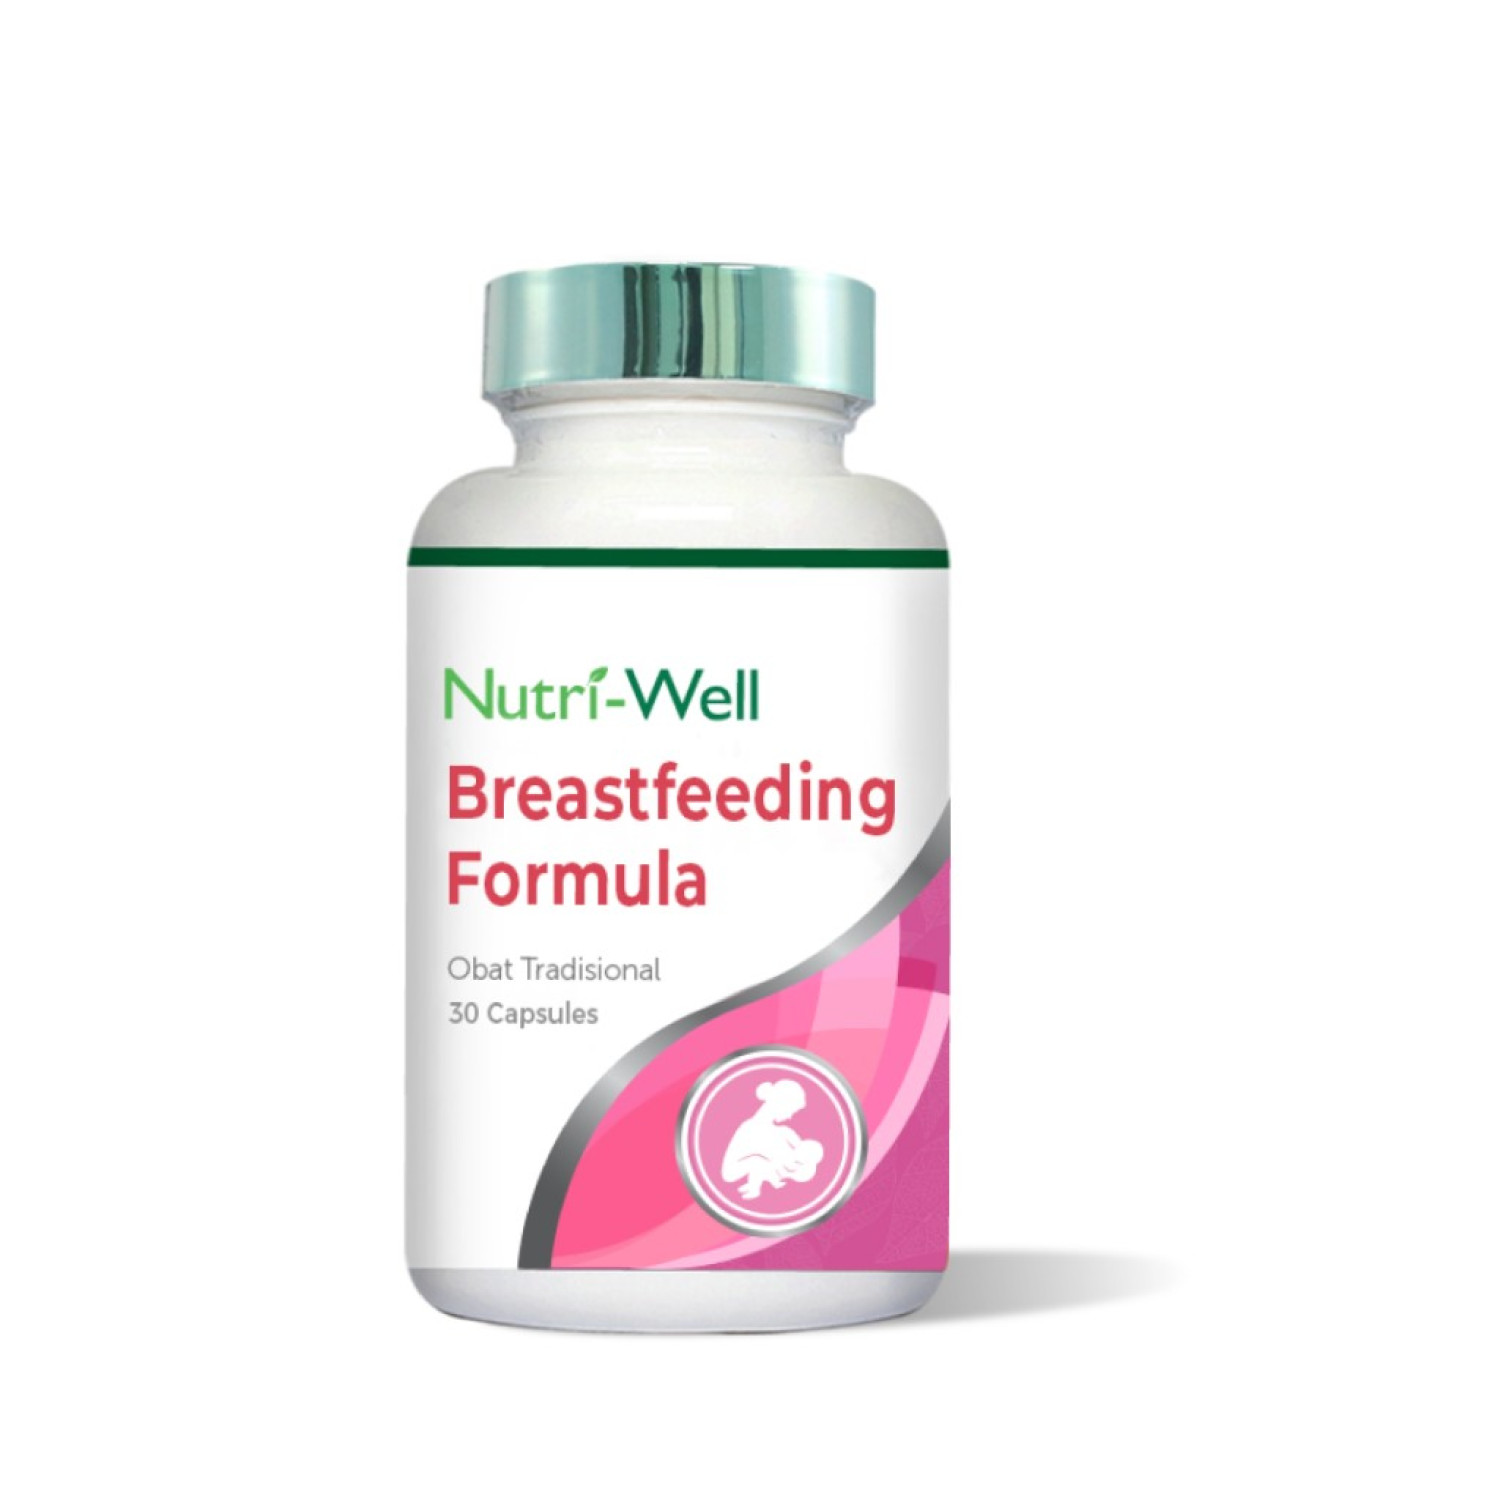 nutriwell-breastfeeding-formula-formula-30-caps-65431a282afaf.jpeg